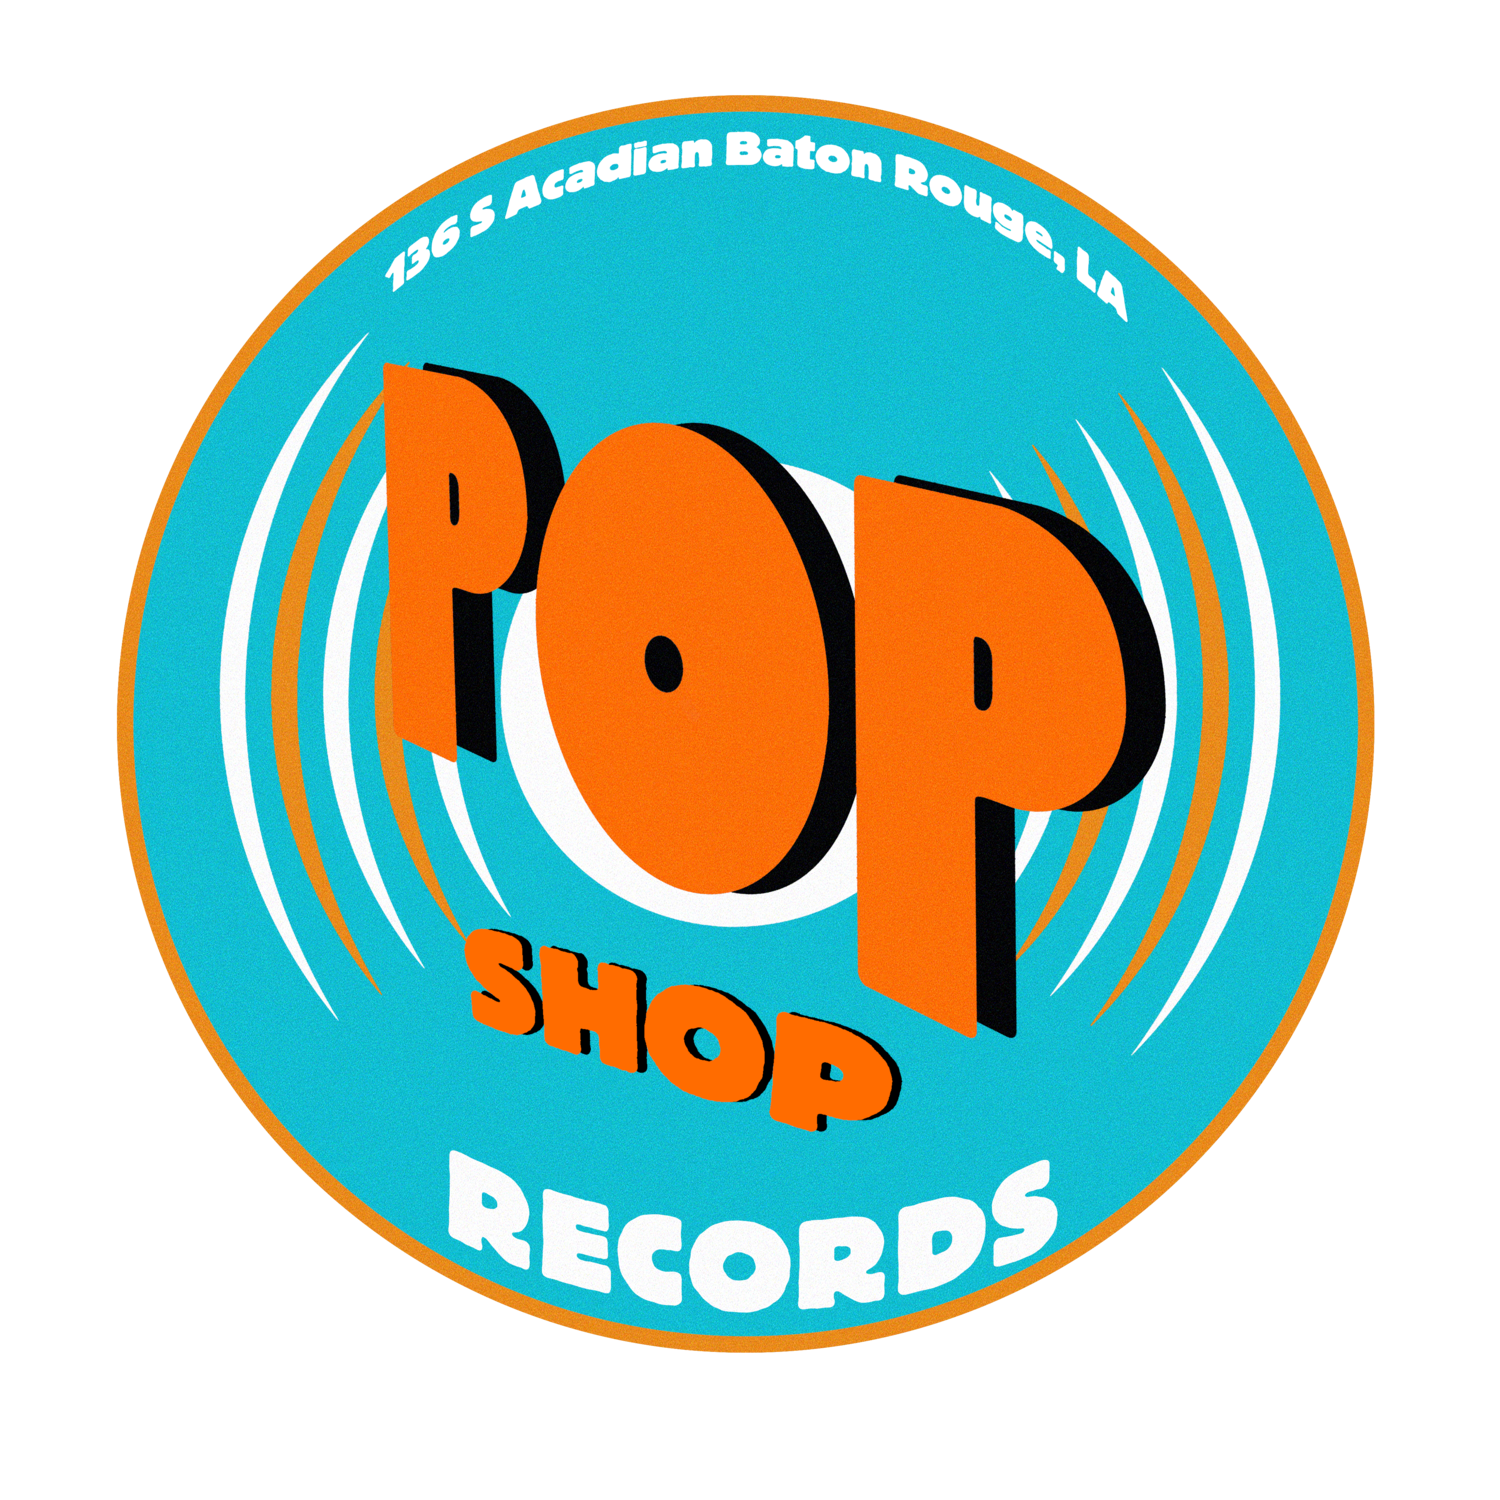 Pop Shop Records